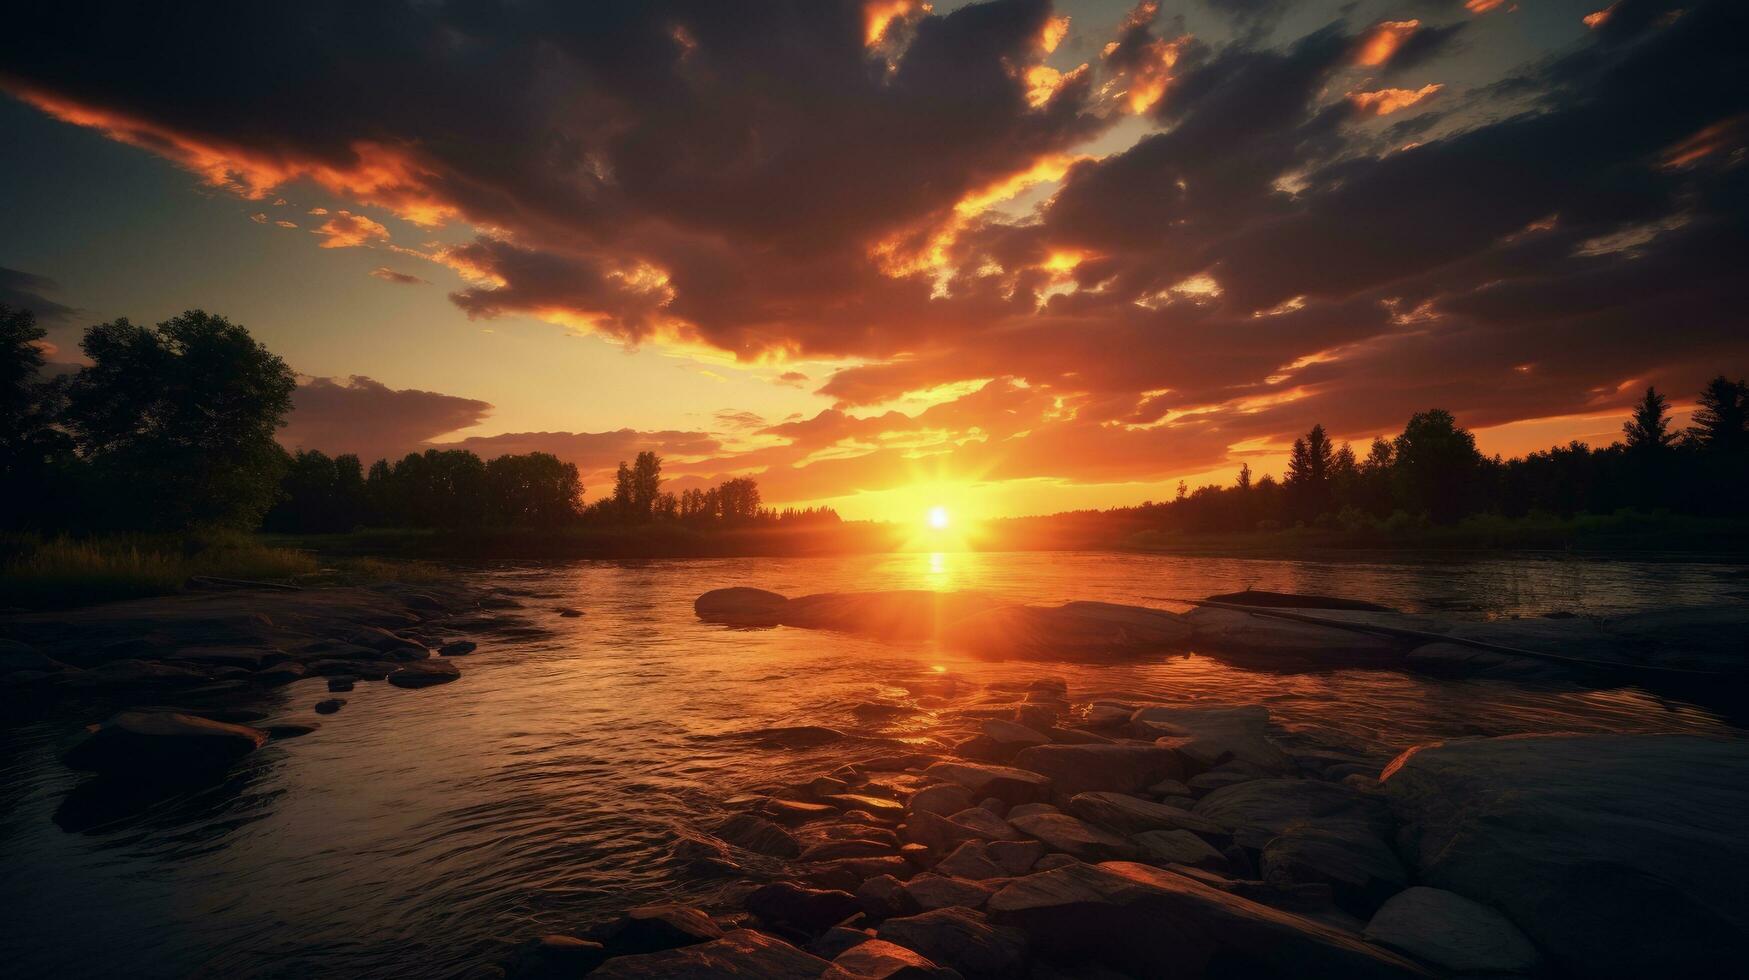 levendig zonsondergang afbeelding toneel- rivier- visie. silhouet concept foto